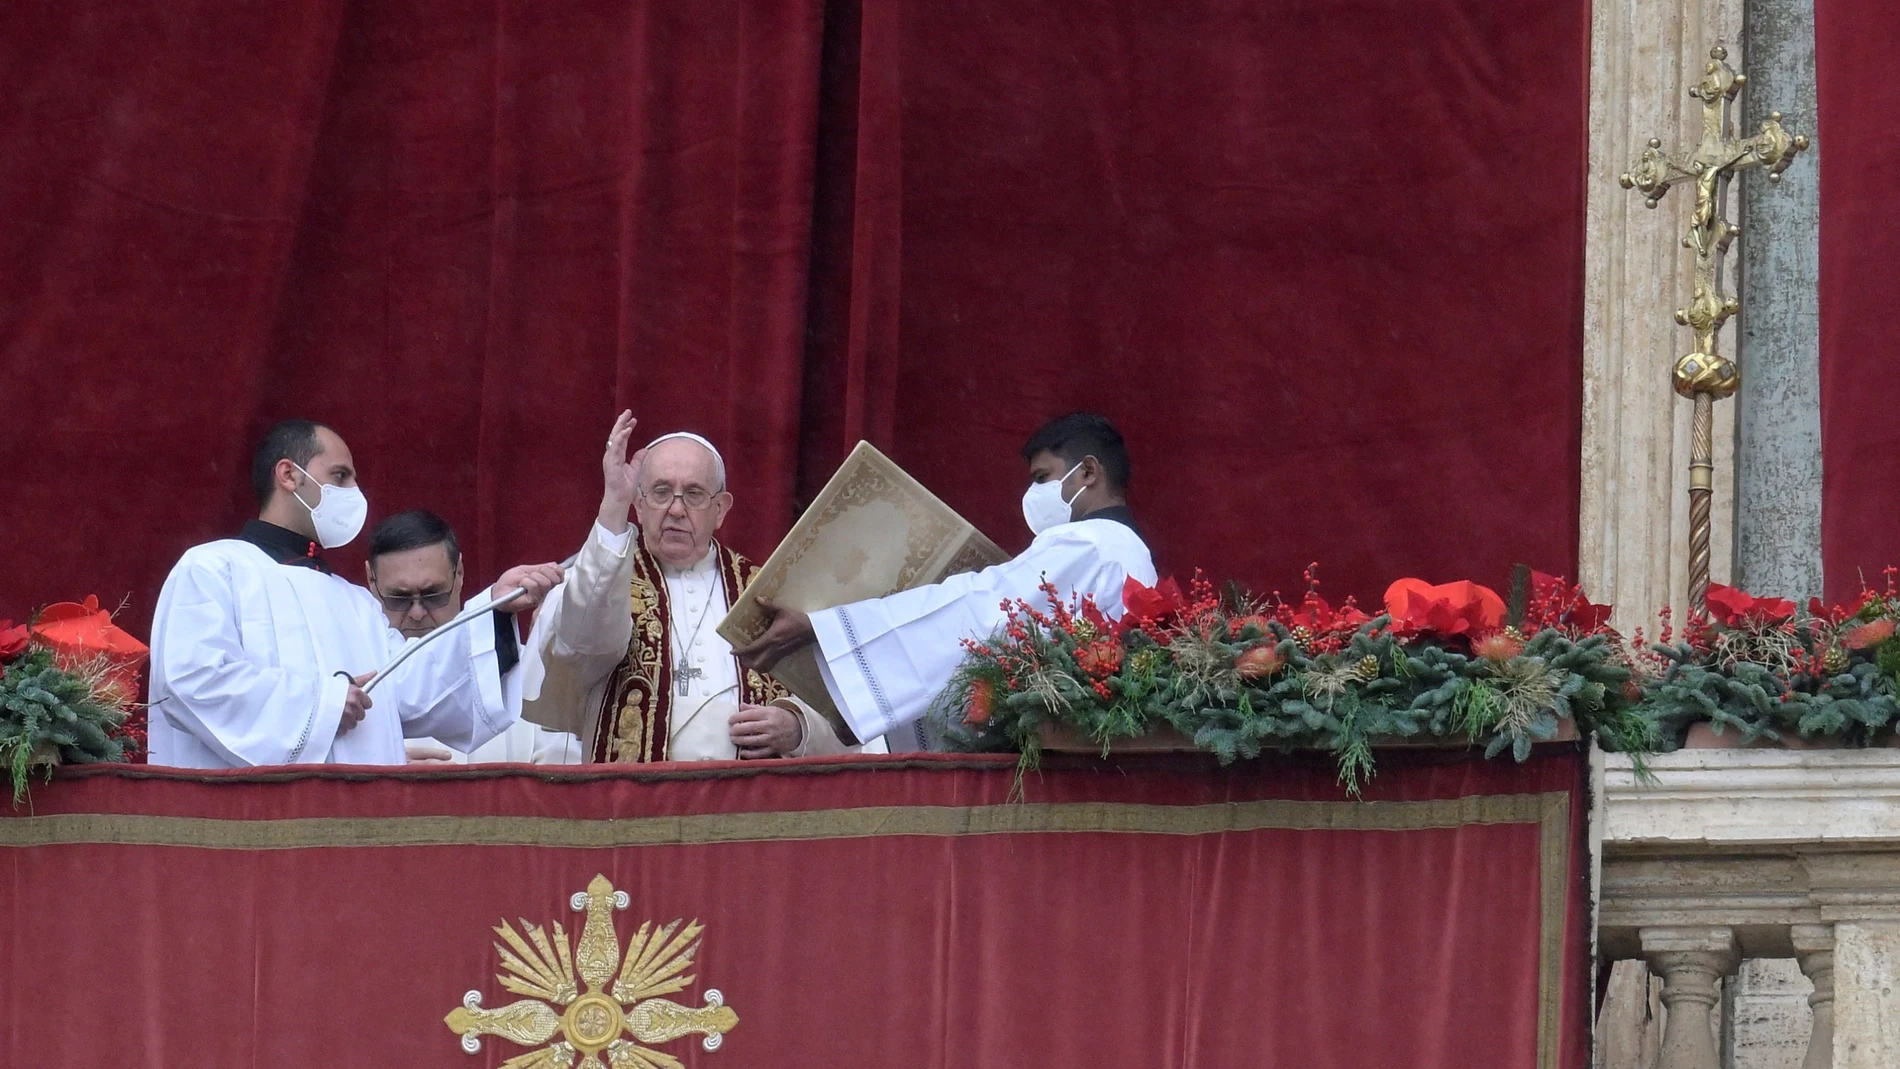 El papa Francisco pide diálogo en un mundo lleno de tragedias que "se pasan por alto"